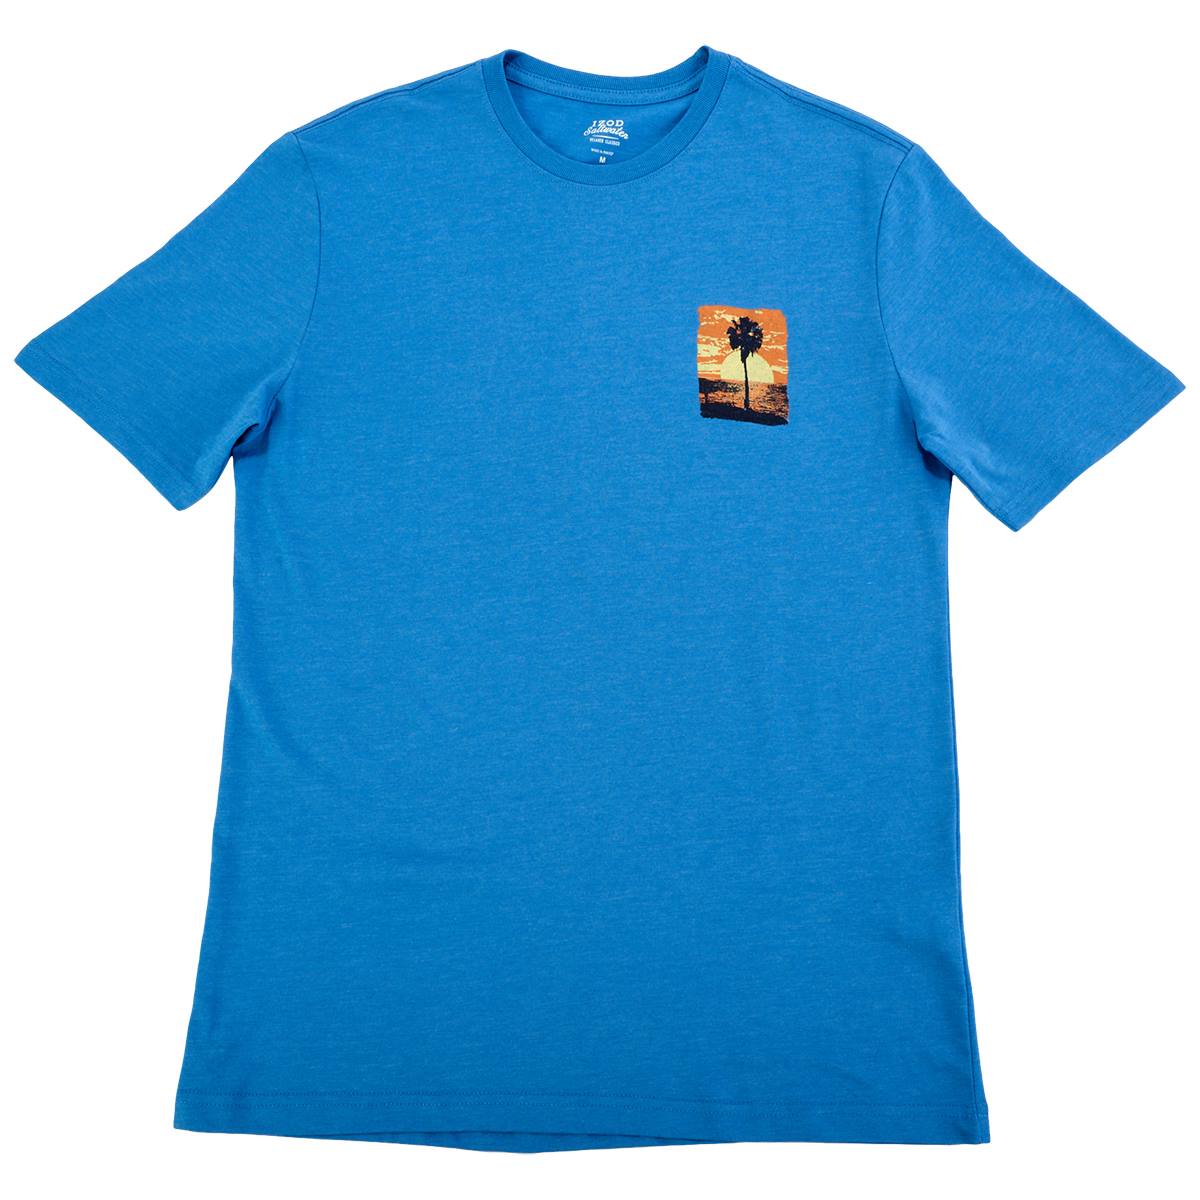 Izod Men's Graphic Tee - Premium Short Sleeve Shirt